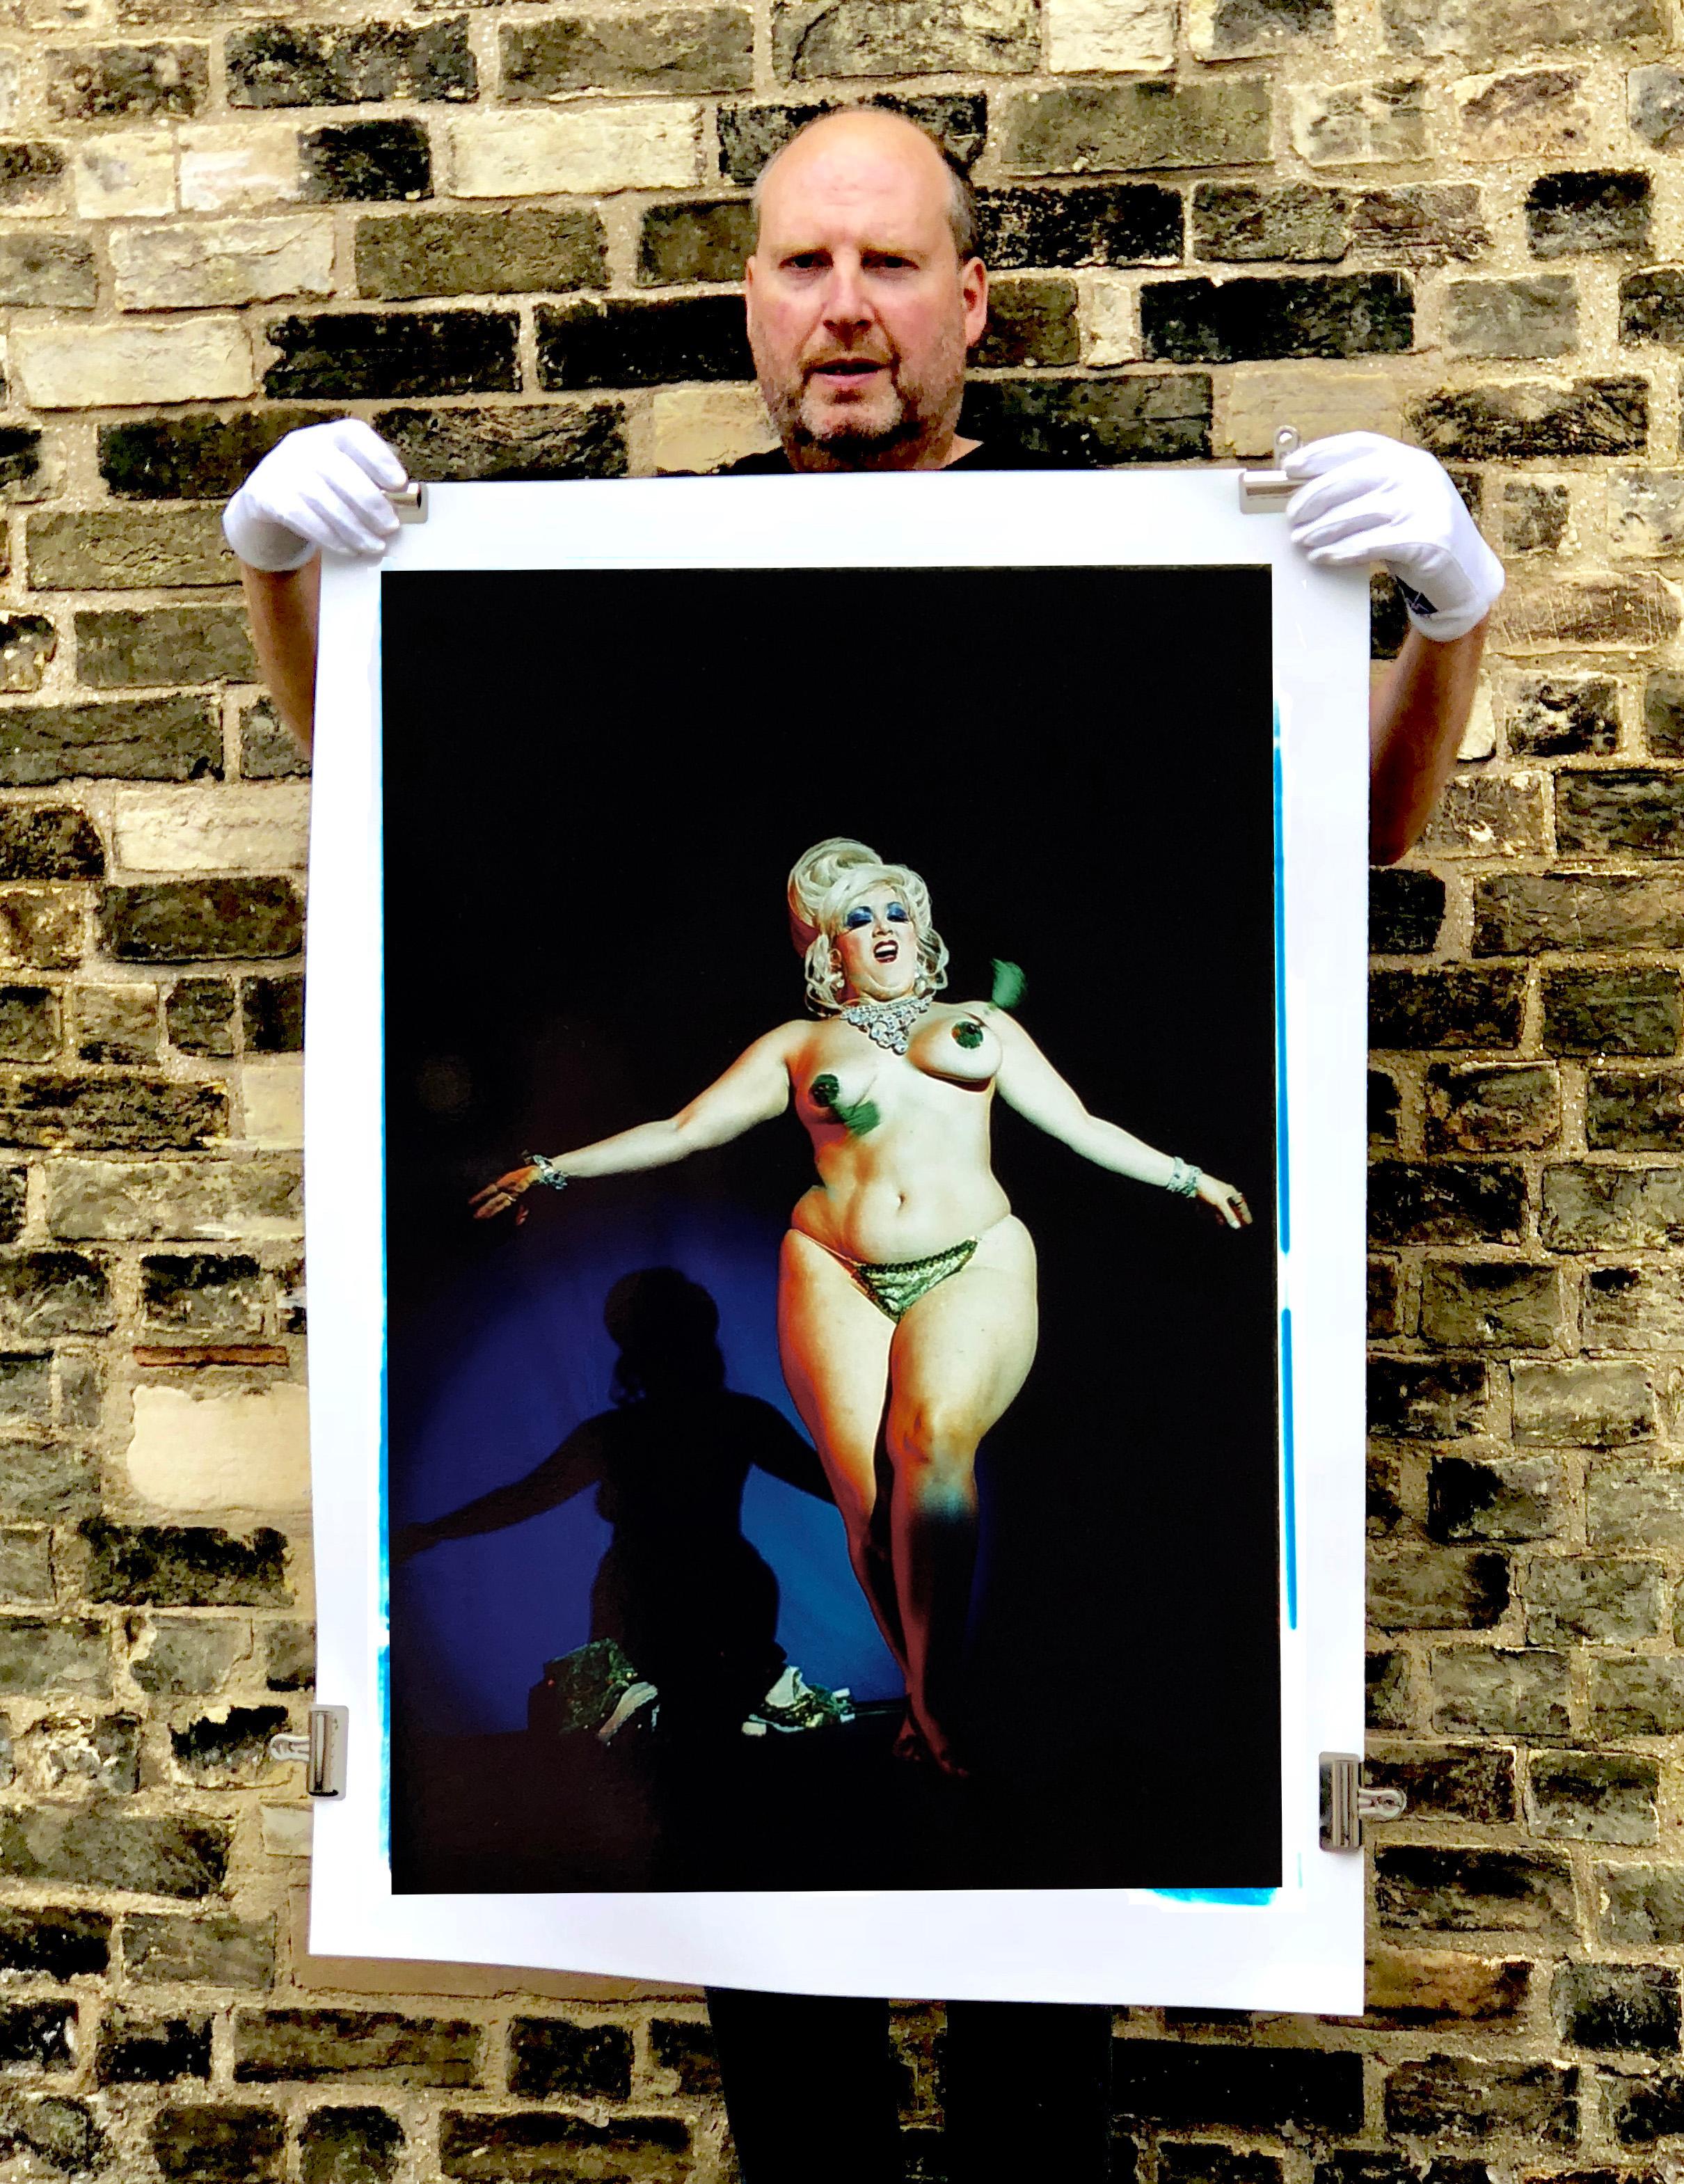 Richard Heeps est devenu célèbre pour sa photographie burlesque après avoir passé l'année 2003 à capturer des spectacles en Grande-Bretagne et en Amérique. Il a passé beaucoup de temps avec ses sujets à plusieurs reprises, établissant des relations